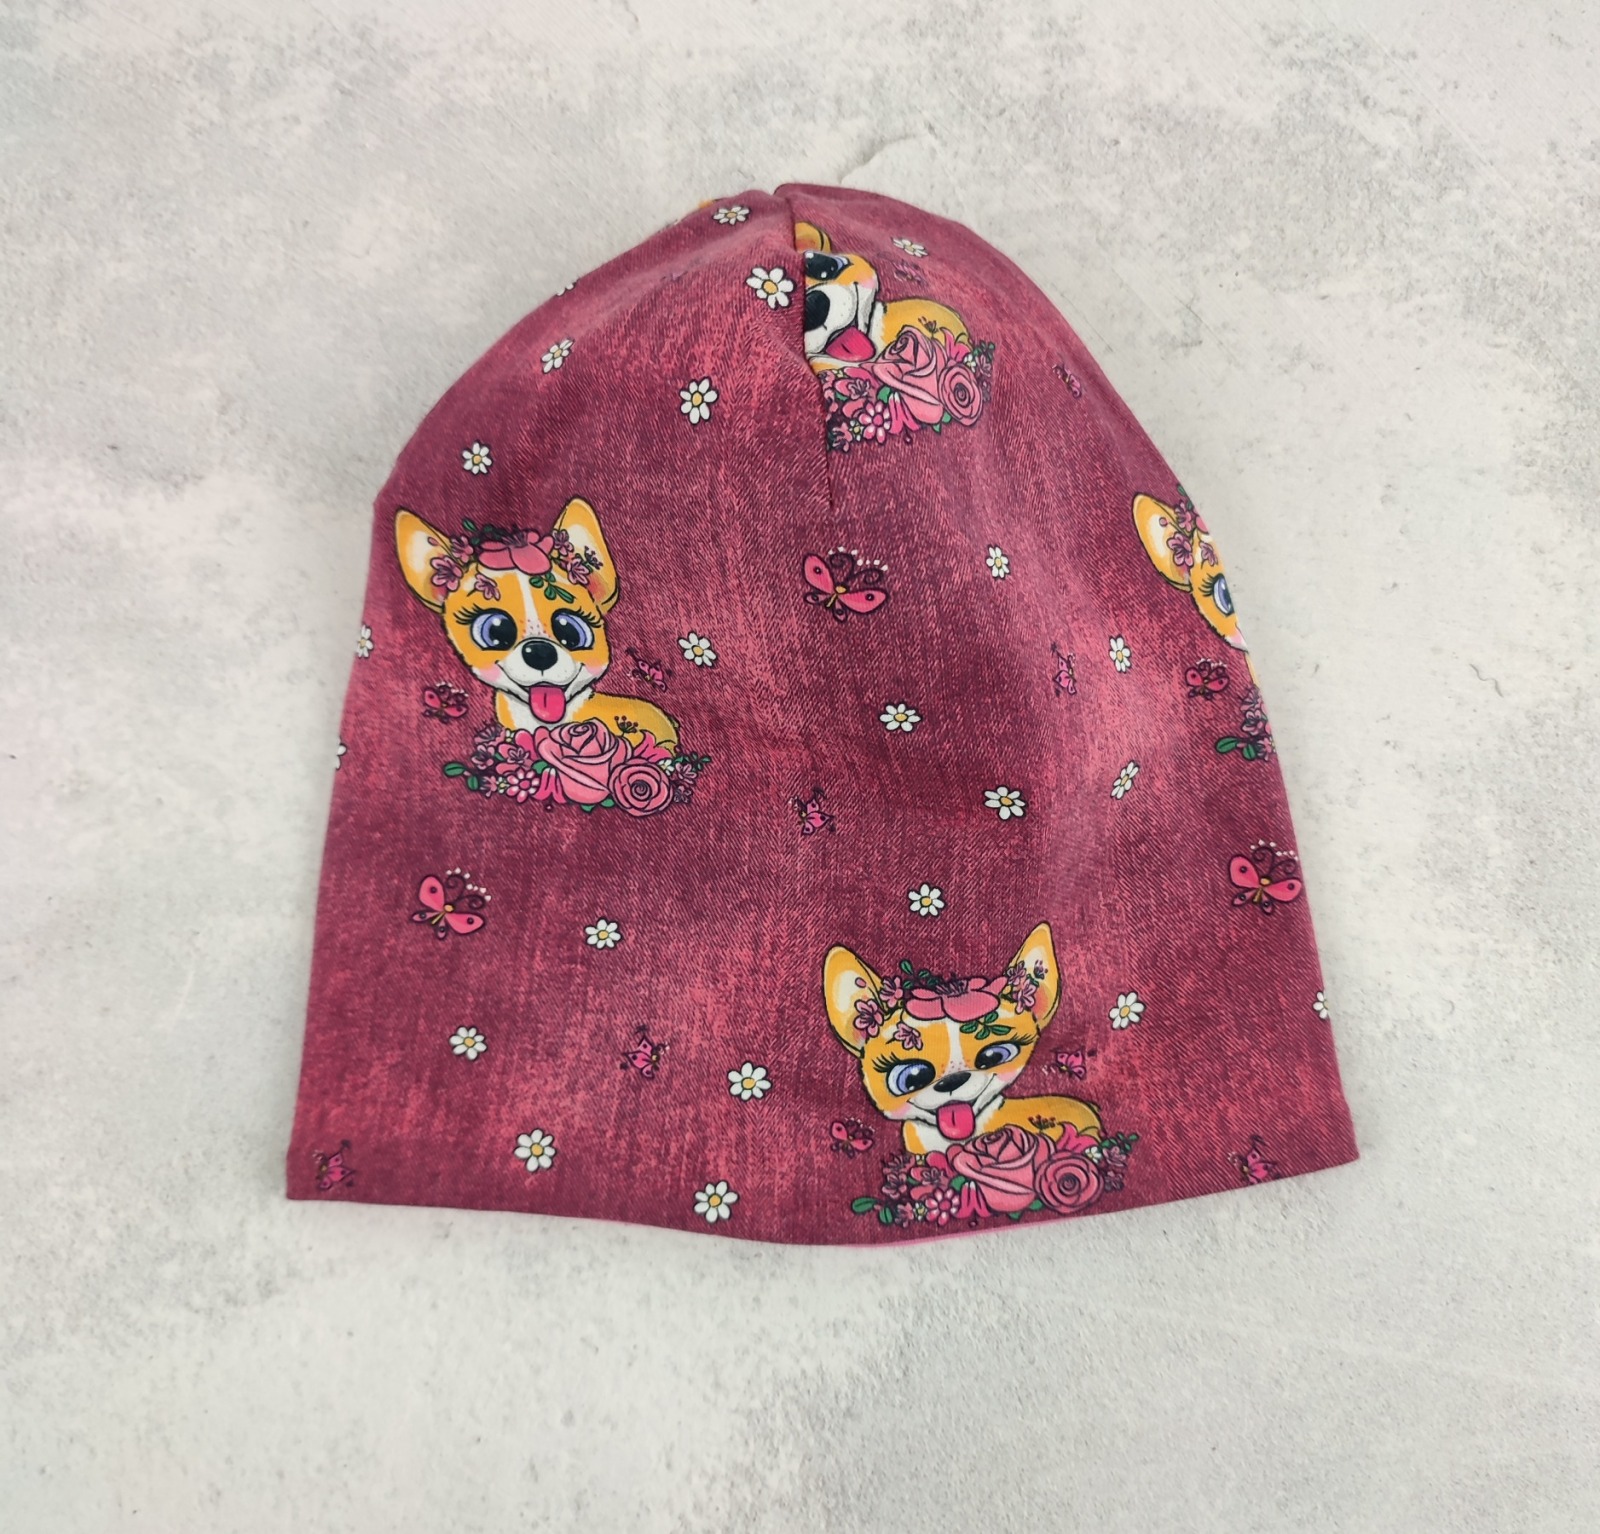 Beanie Mädchen Chihuahuas - Kindermütze aus Jersey in beere und pink mit Hunden und Blumen Größe